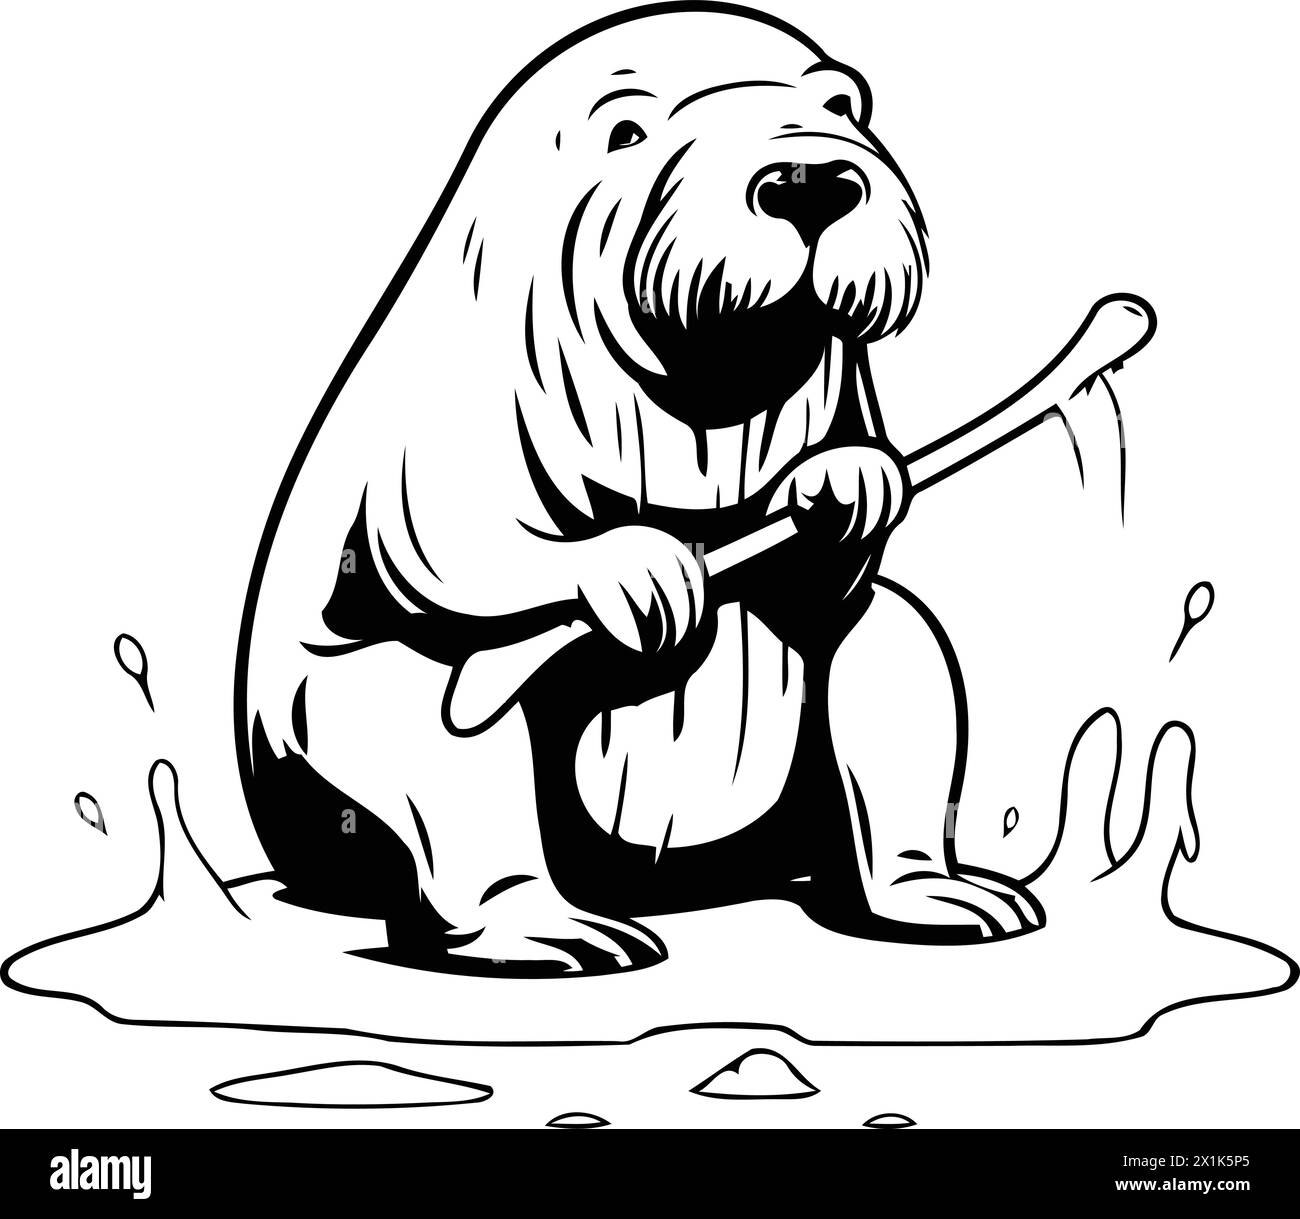 Vektor-Illustration eines Braunbären, der auf einer Eisscholle sitzt und einen Stock hält Stock Vektor